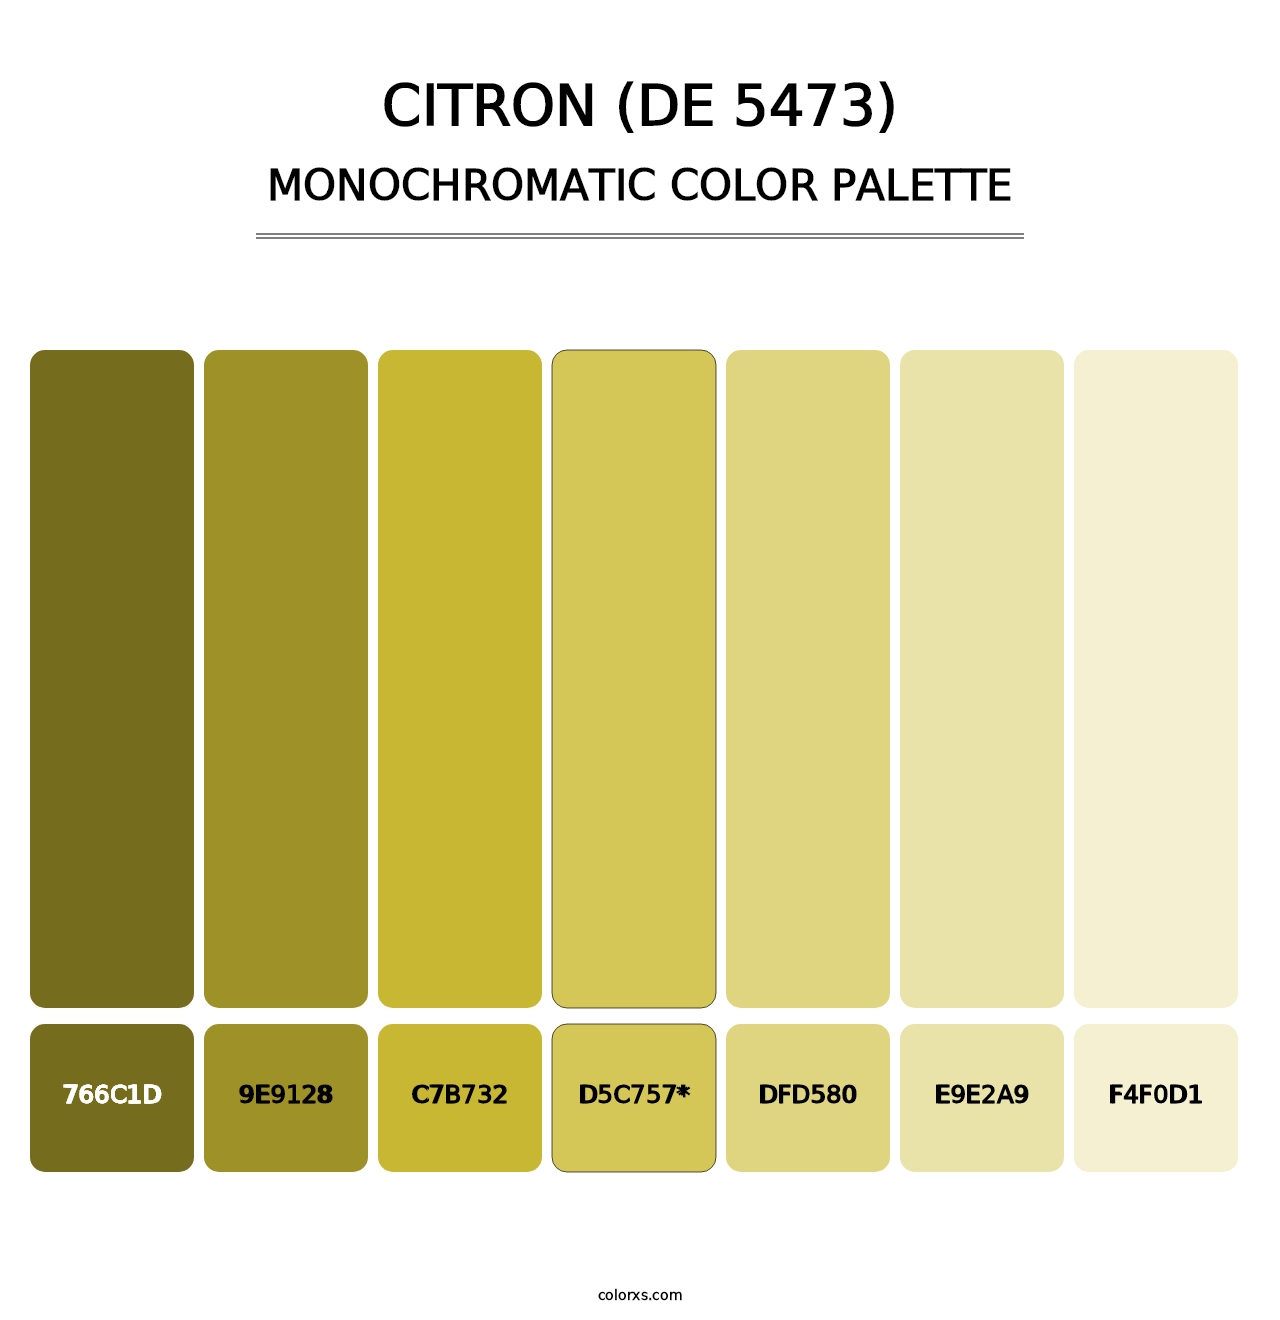 Citron (DE 5473) - Monochromatic Color Palette